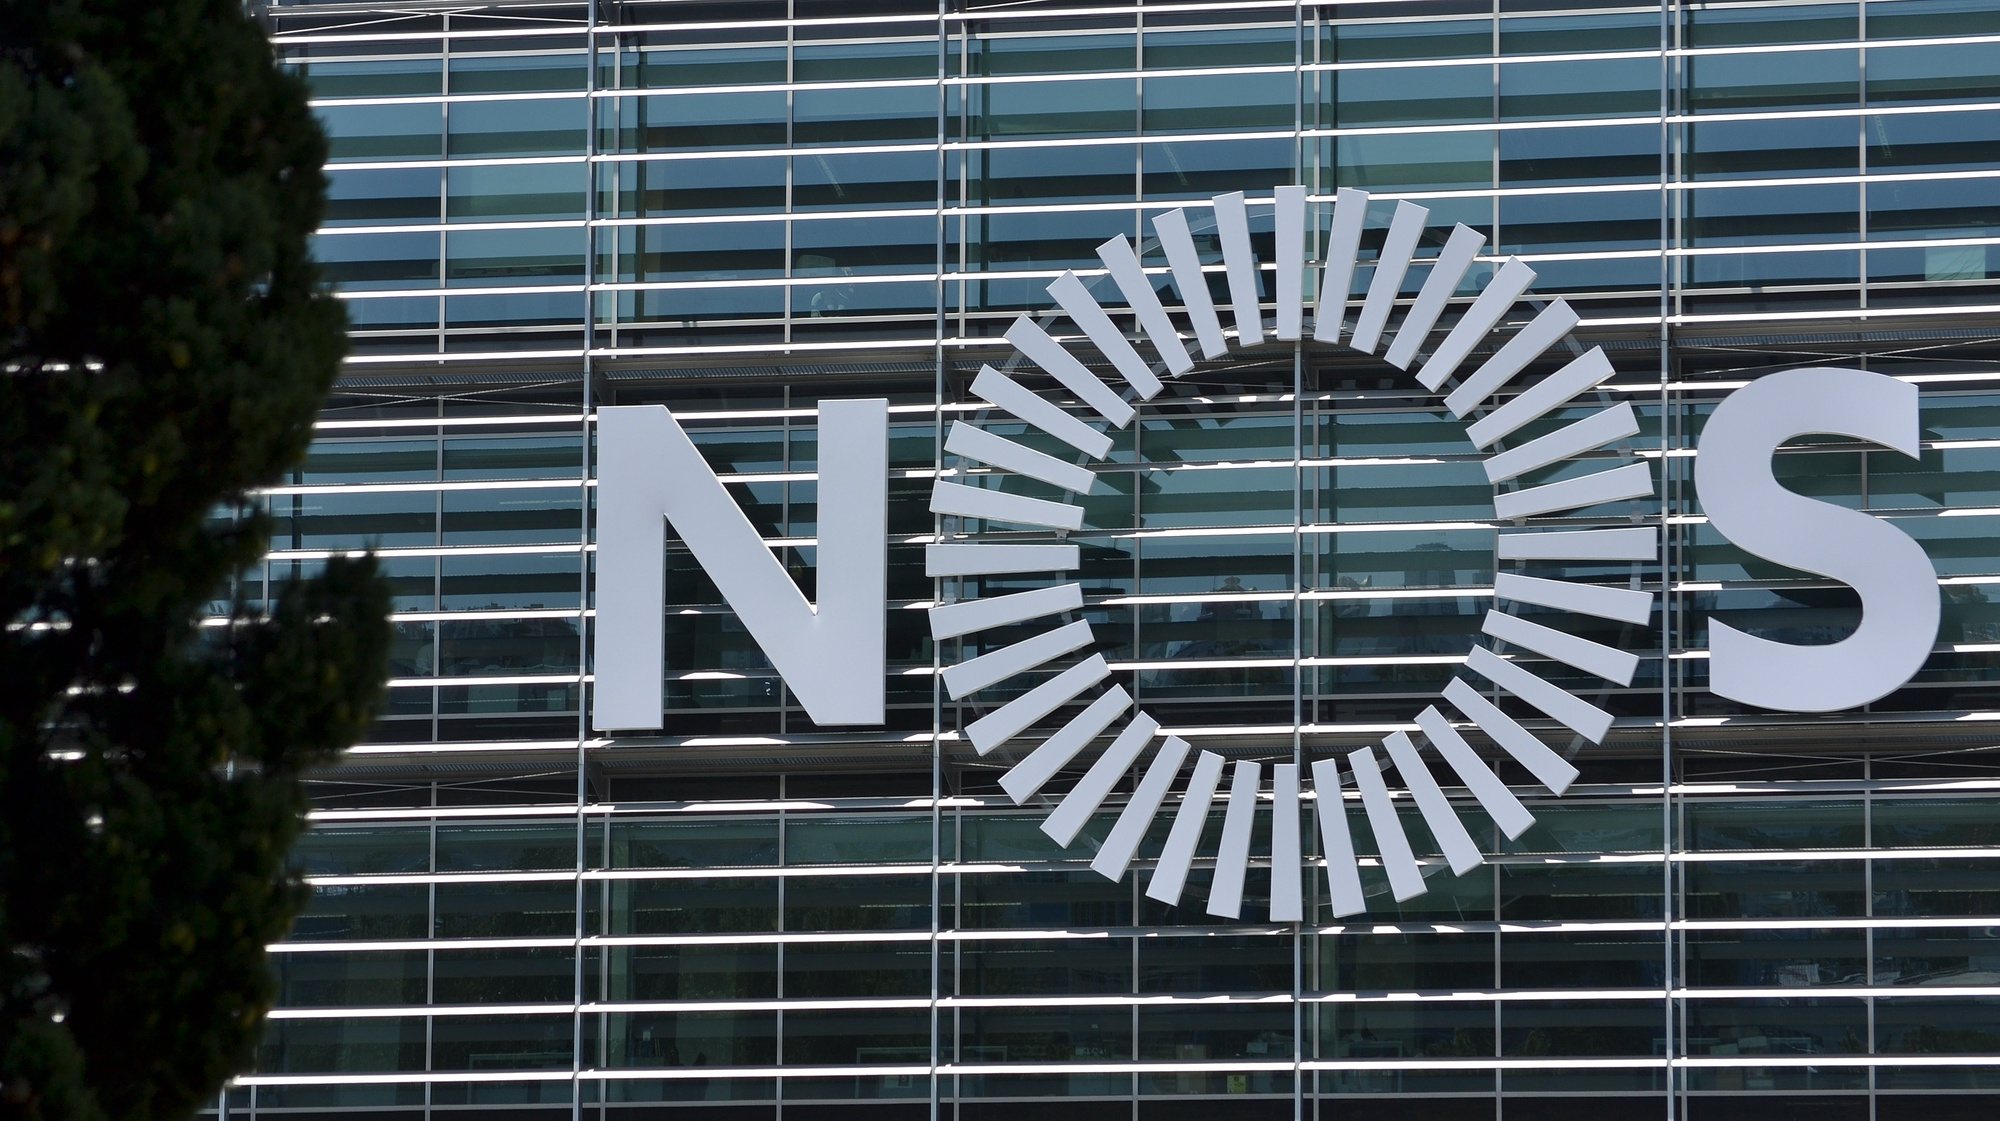 Logotipo da NOS, Lisboa, 06 de agosto de 2014. TIAGO HENRIQUE MARQUES/LUSA